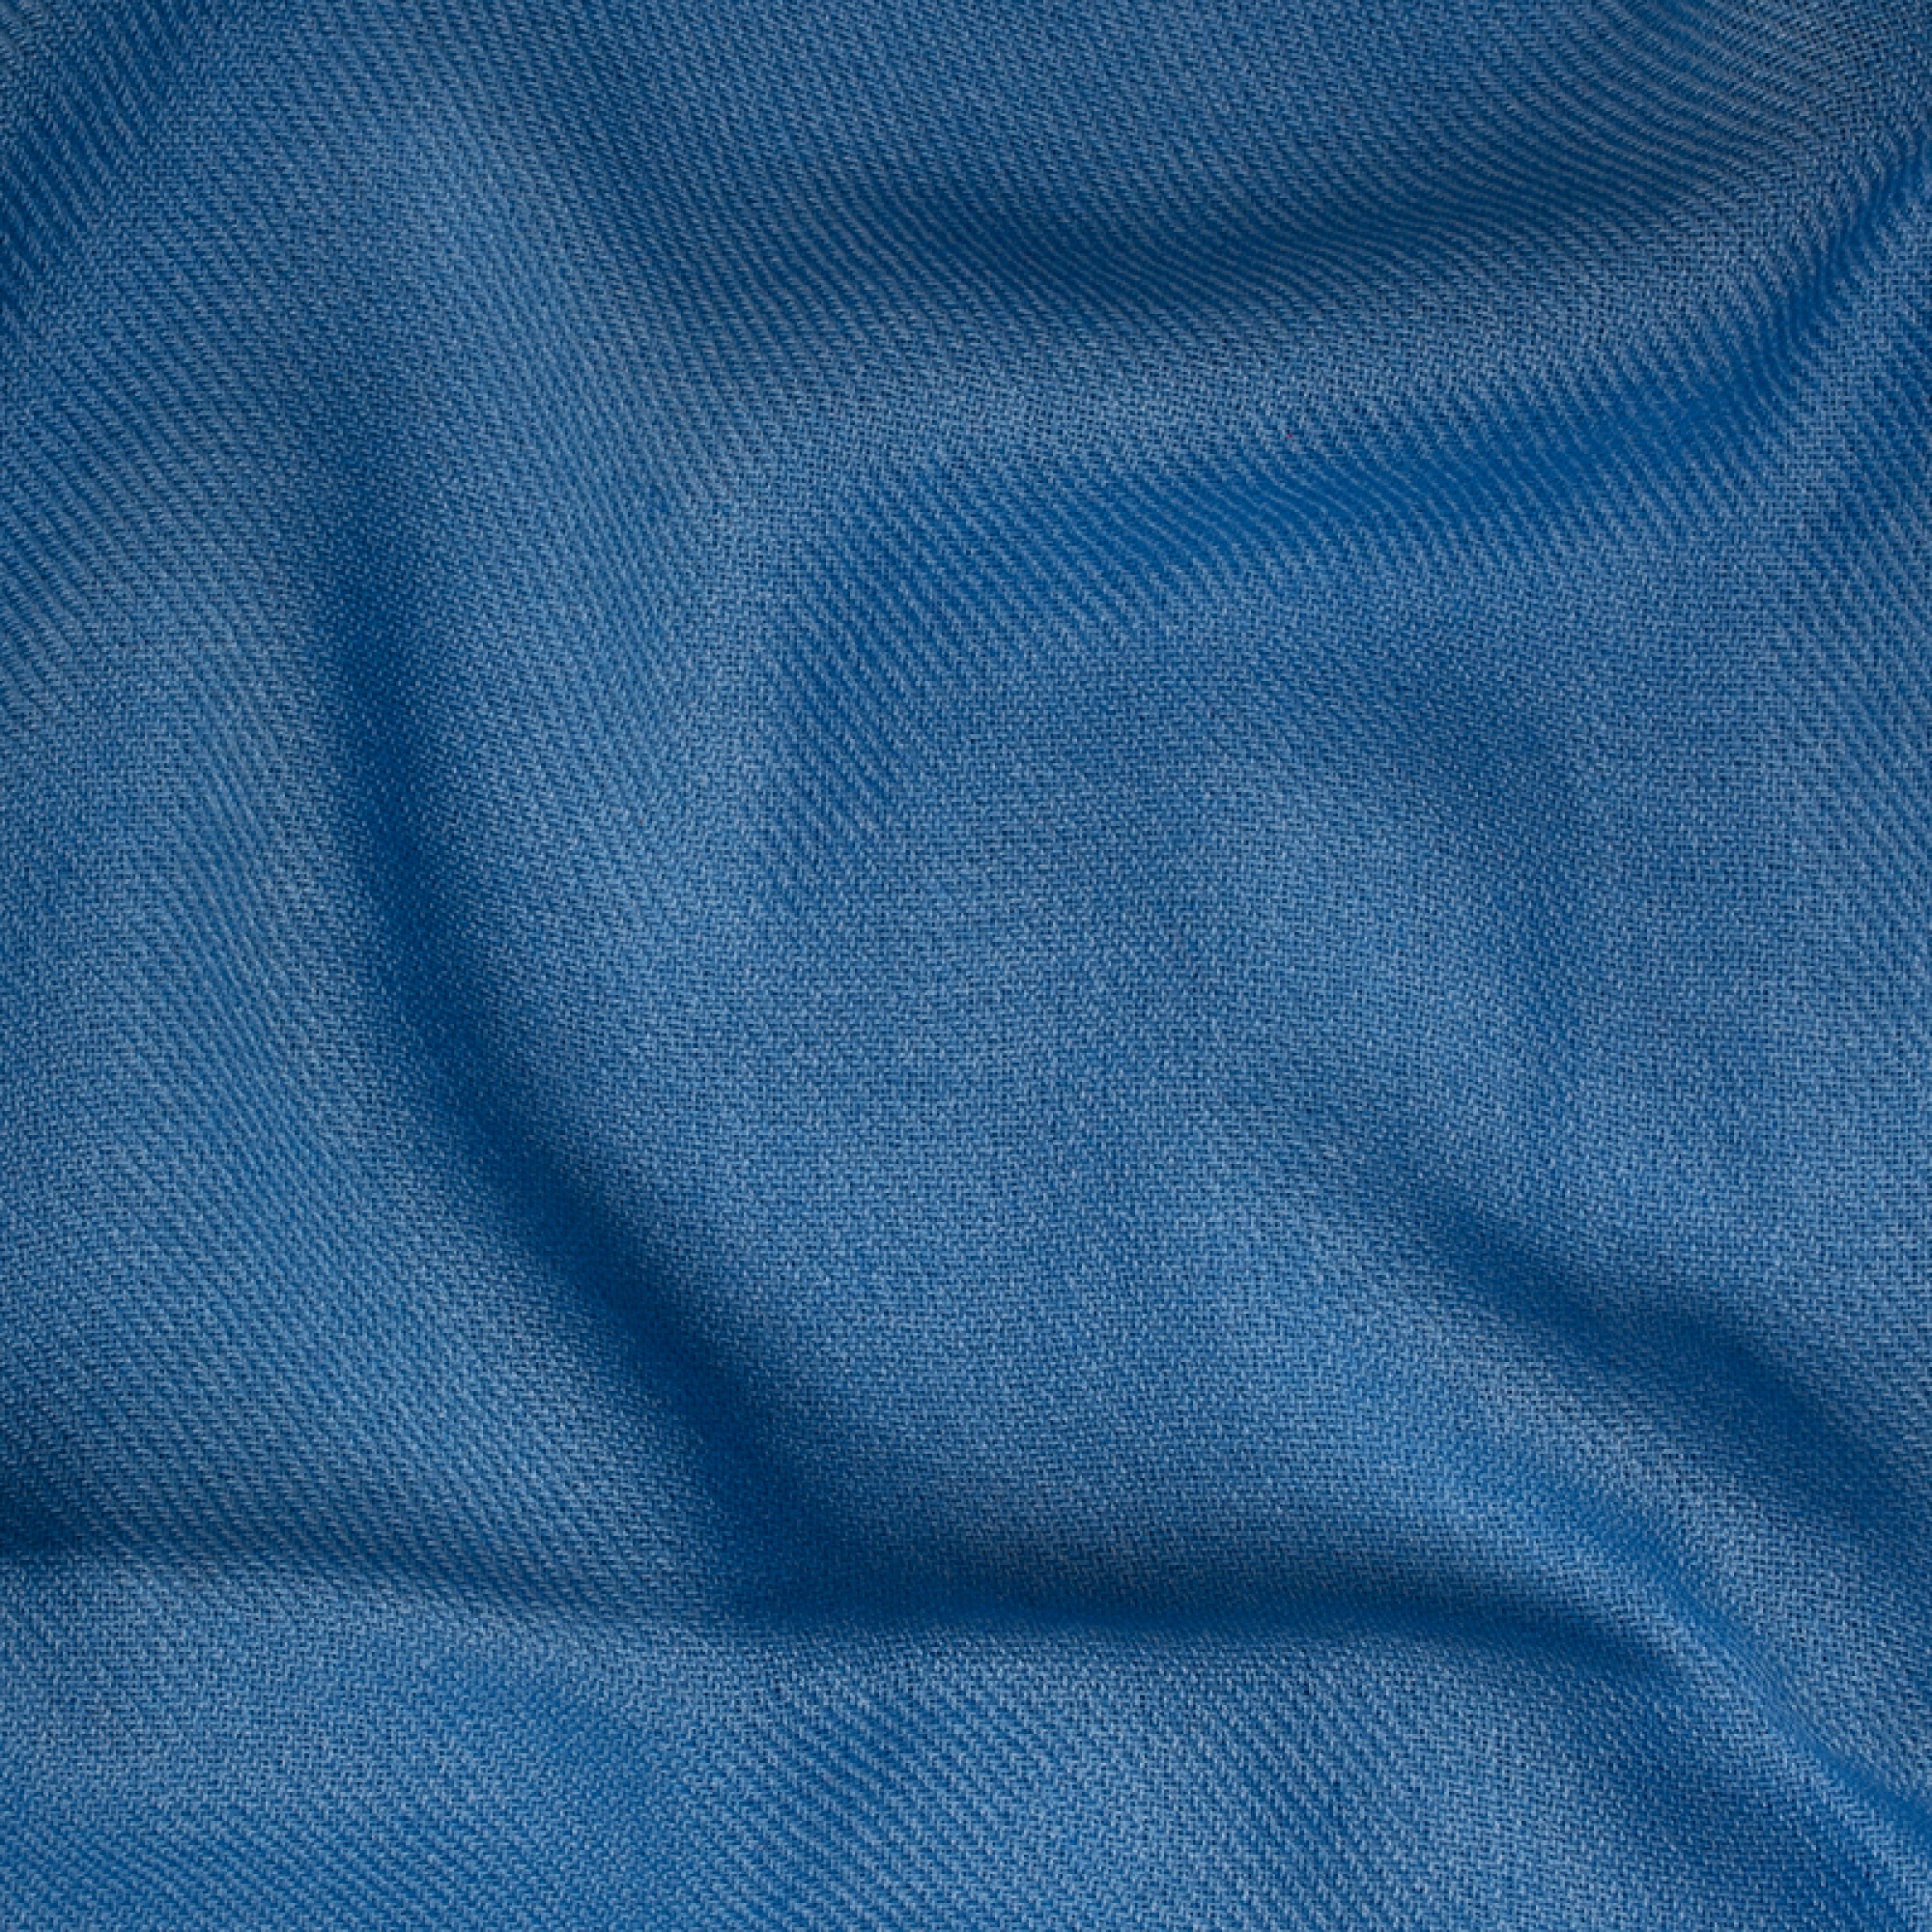 Cachemire accessoires couvertures plaids frisbi 147 x 203 bleu miro 147 x 203 cm